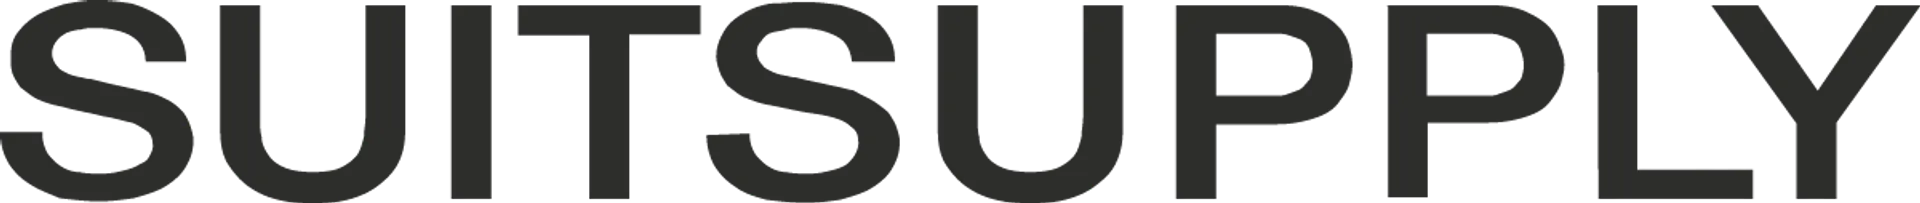 SUITSUPPLY logo in de folder van deze week